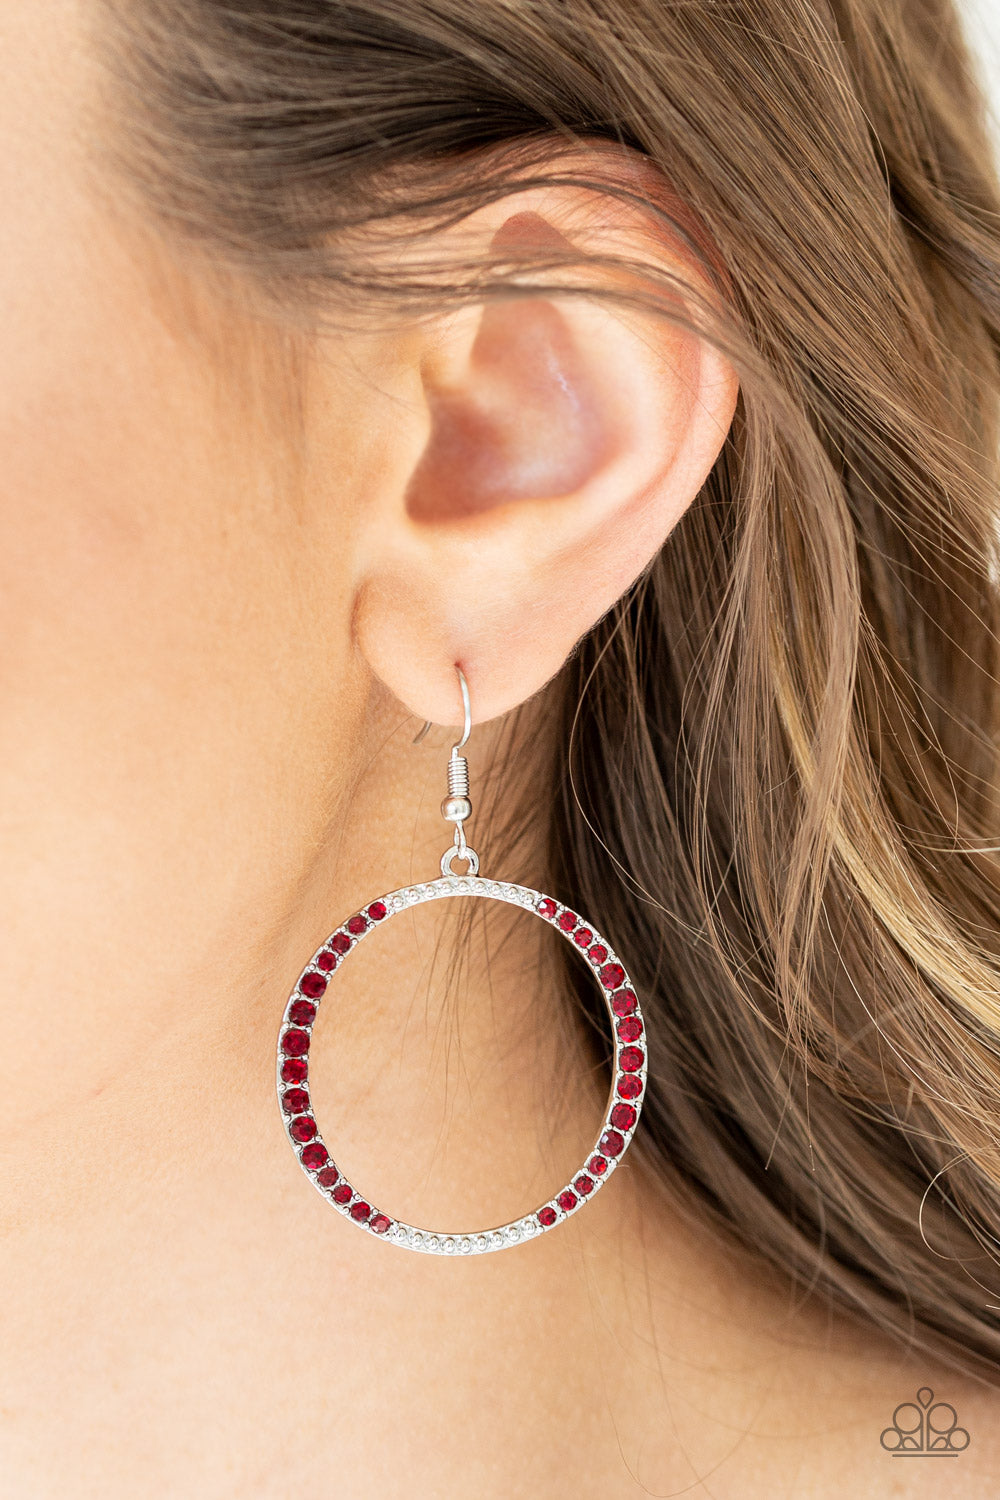 Risky Ritz - Red earrings